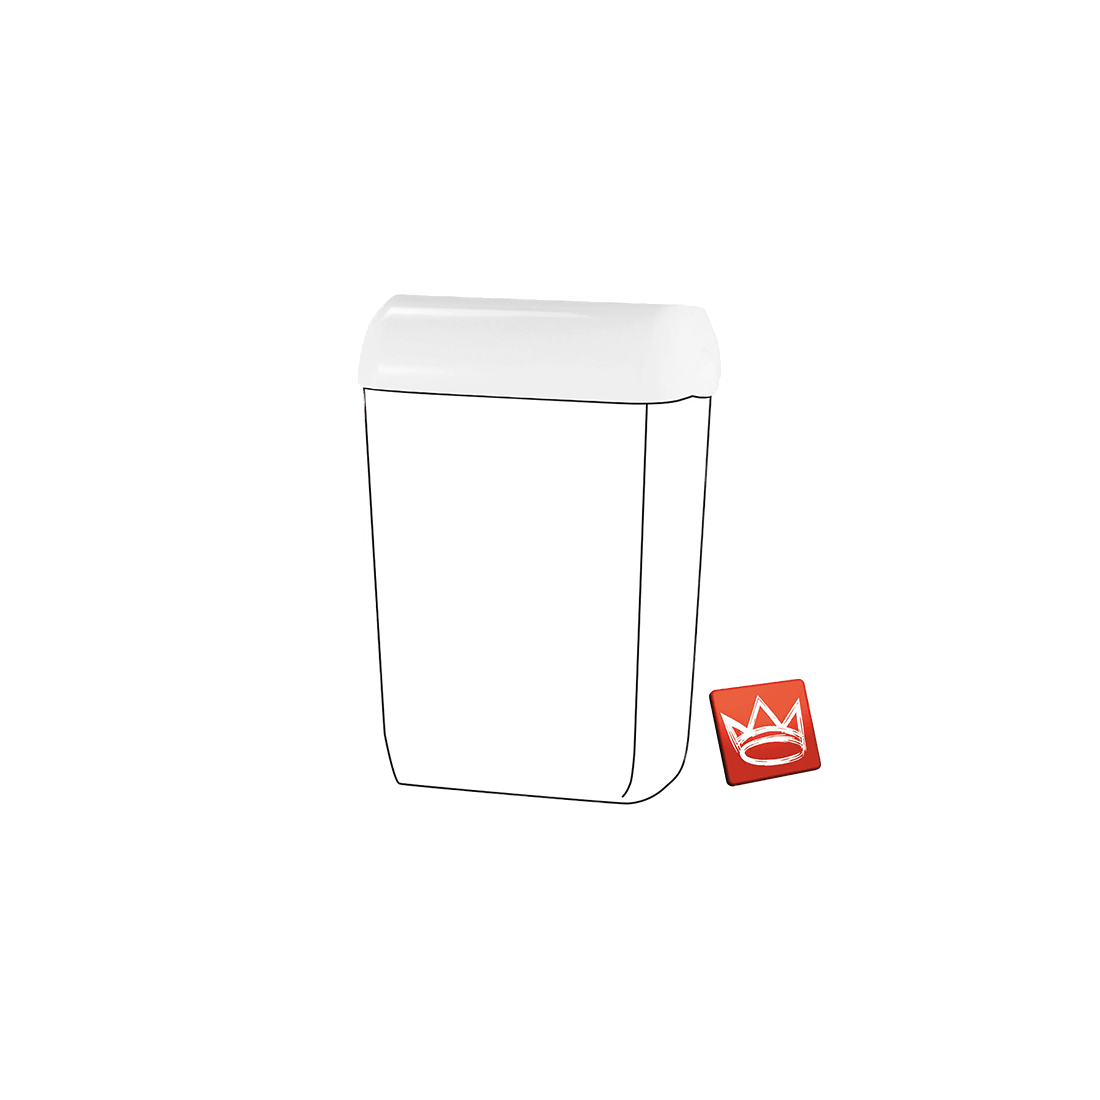 Tapira Deckel für Abfallbehälter groß